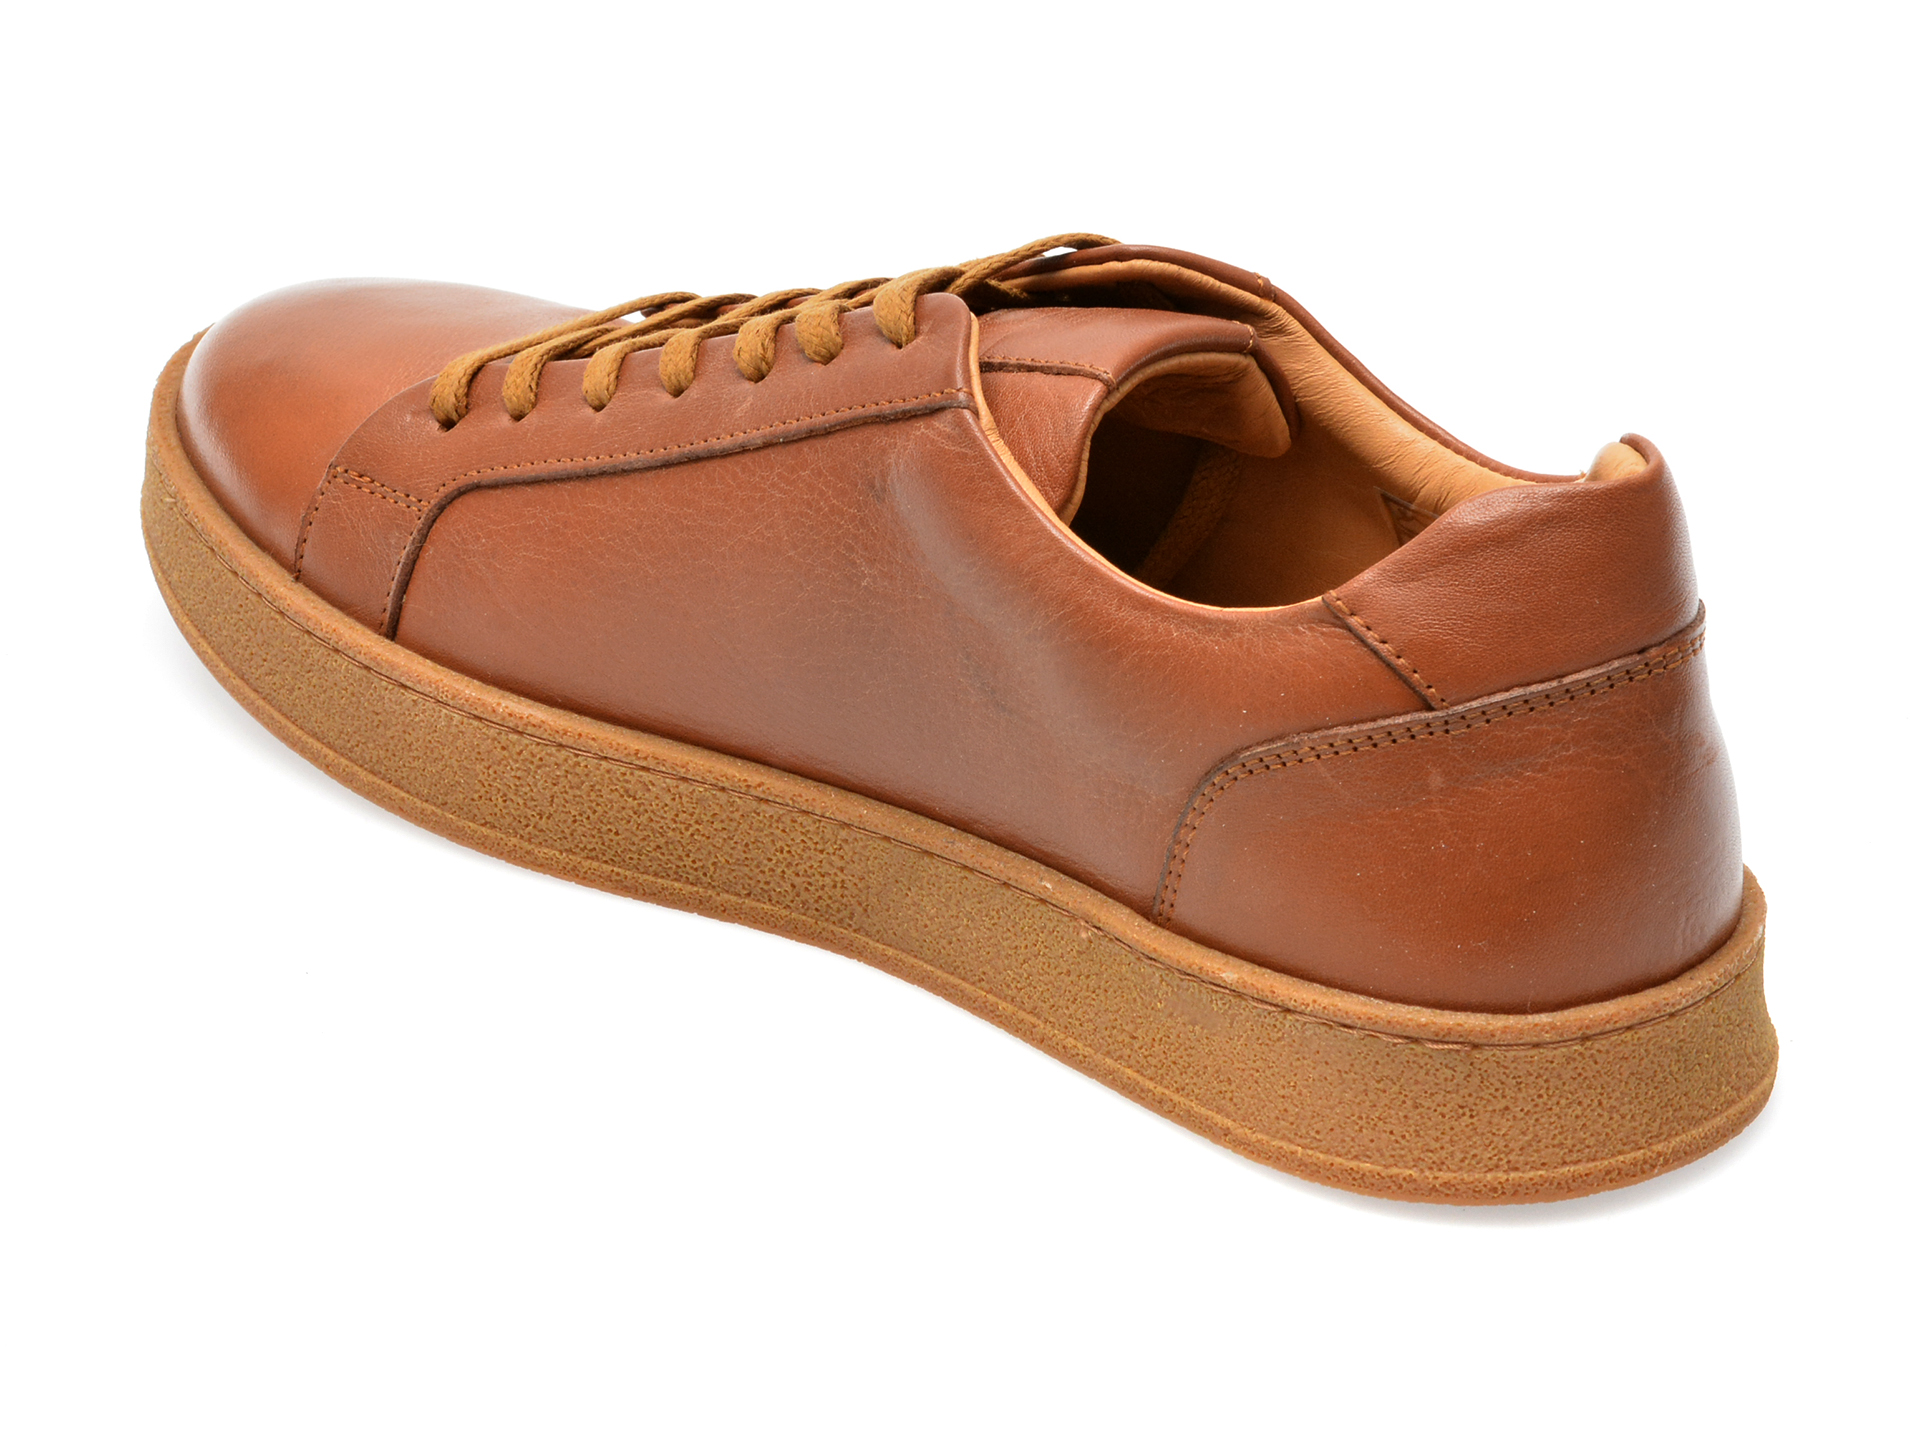 Pantofi AXXELLL maro, MS1003, din piele naturala